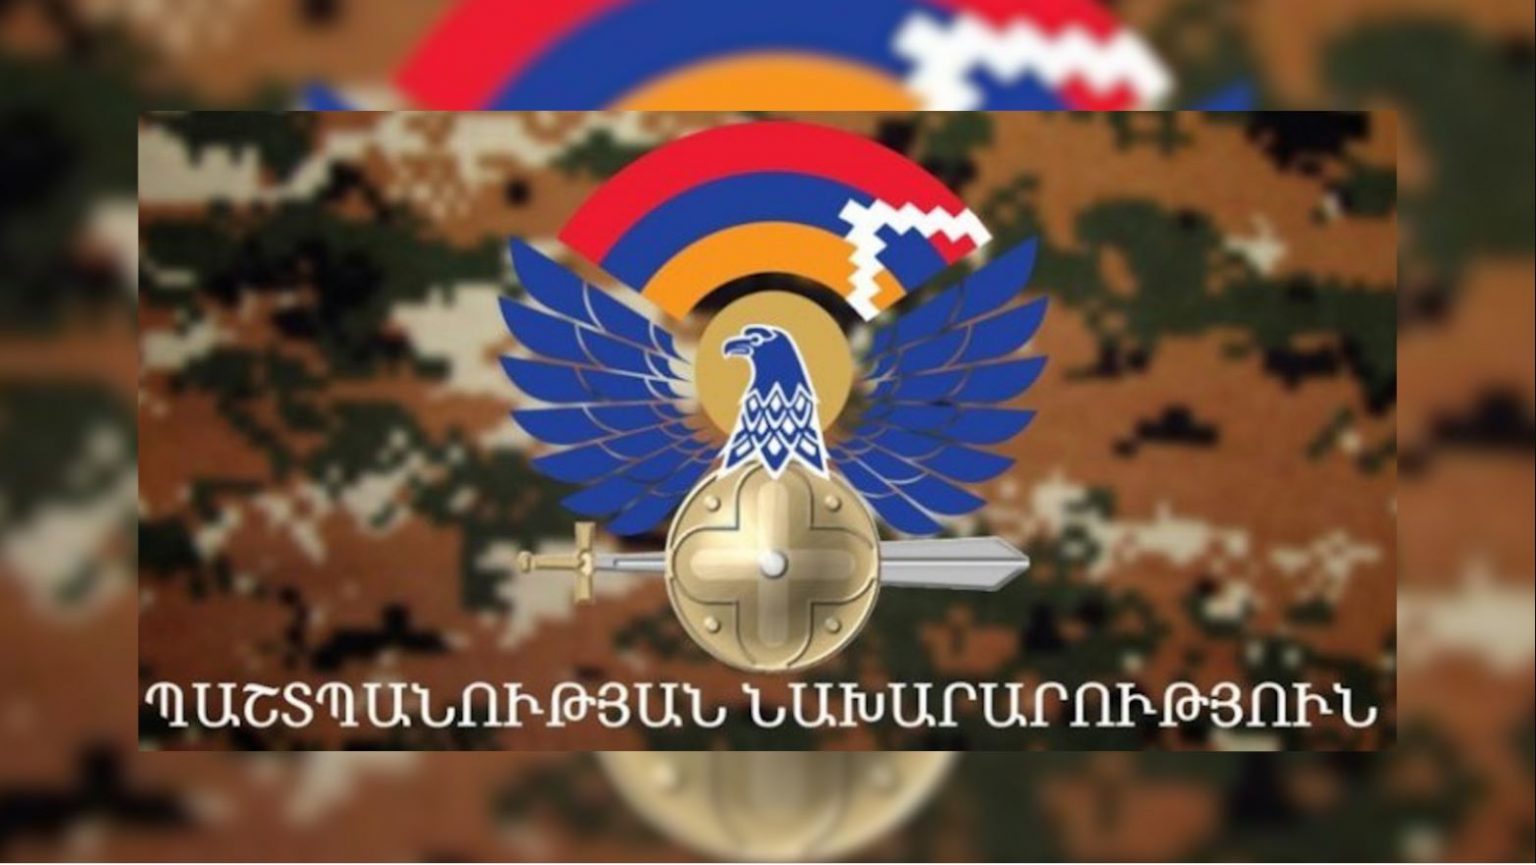 Минобороны Азербайджана продолжает распространять дезинформацию - Армия обороны Арцаха